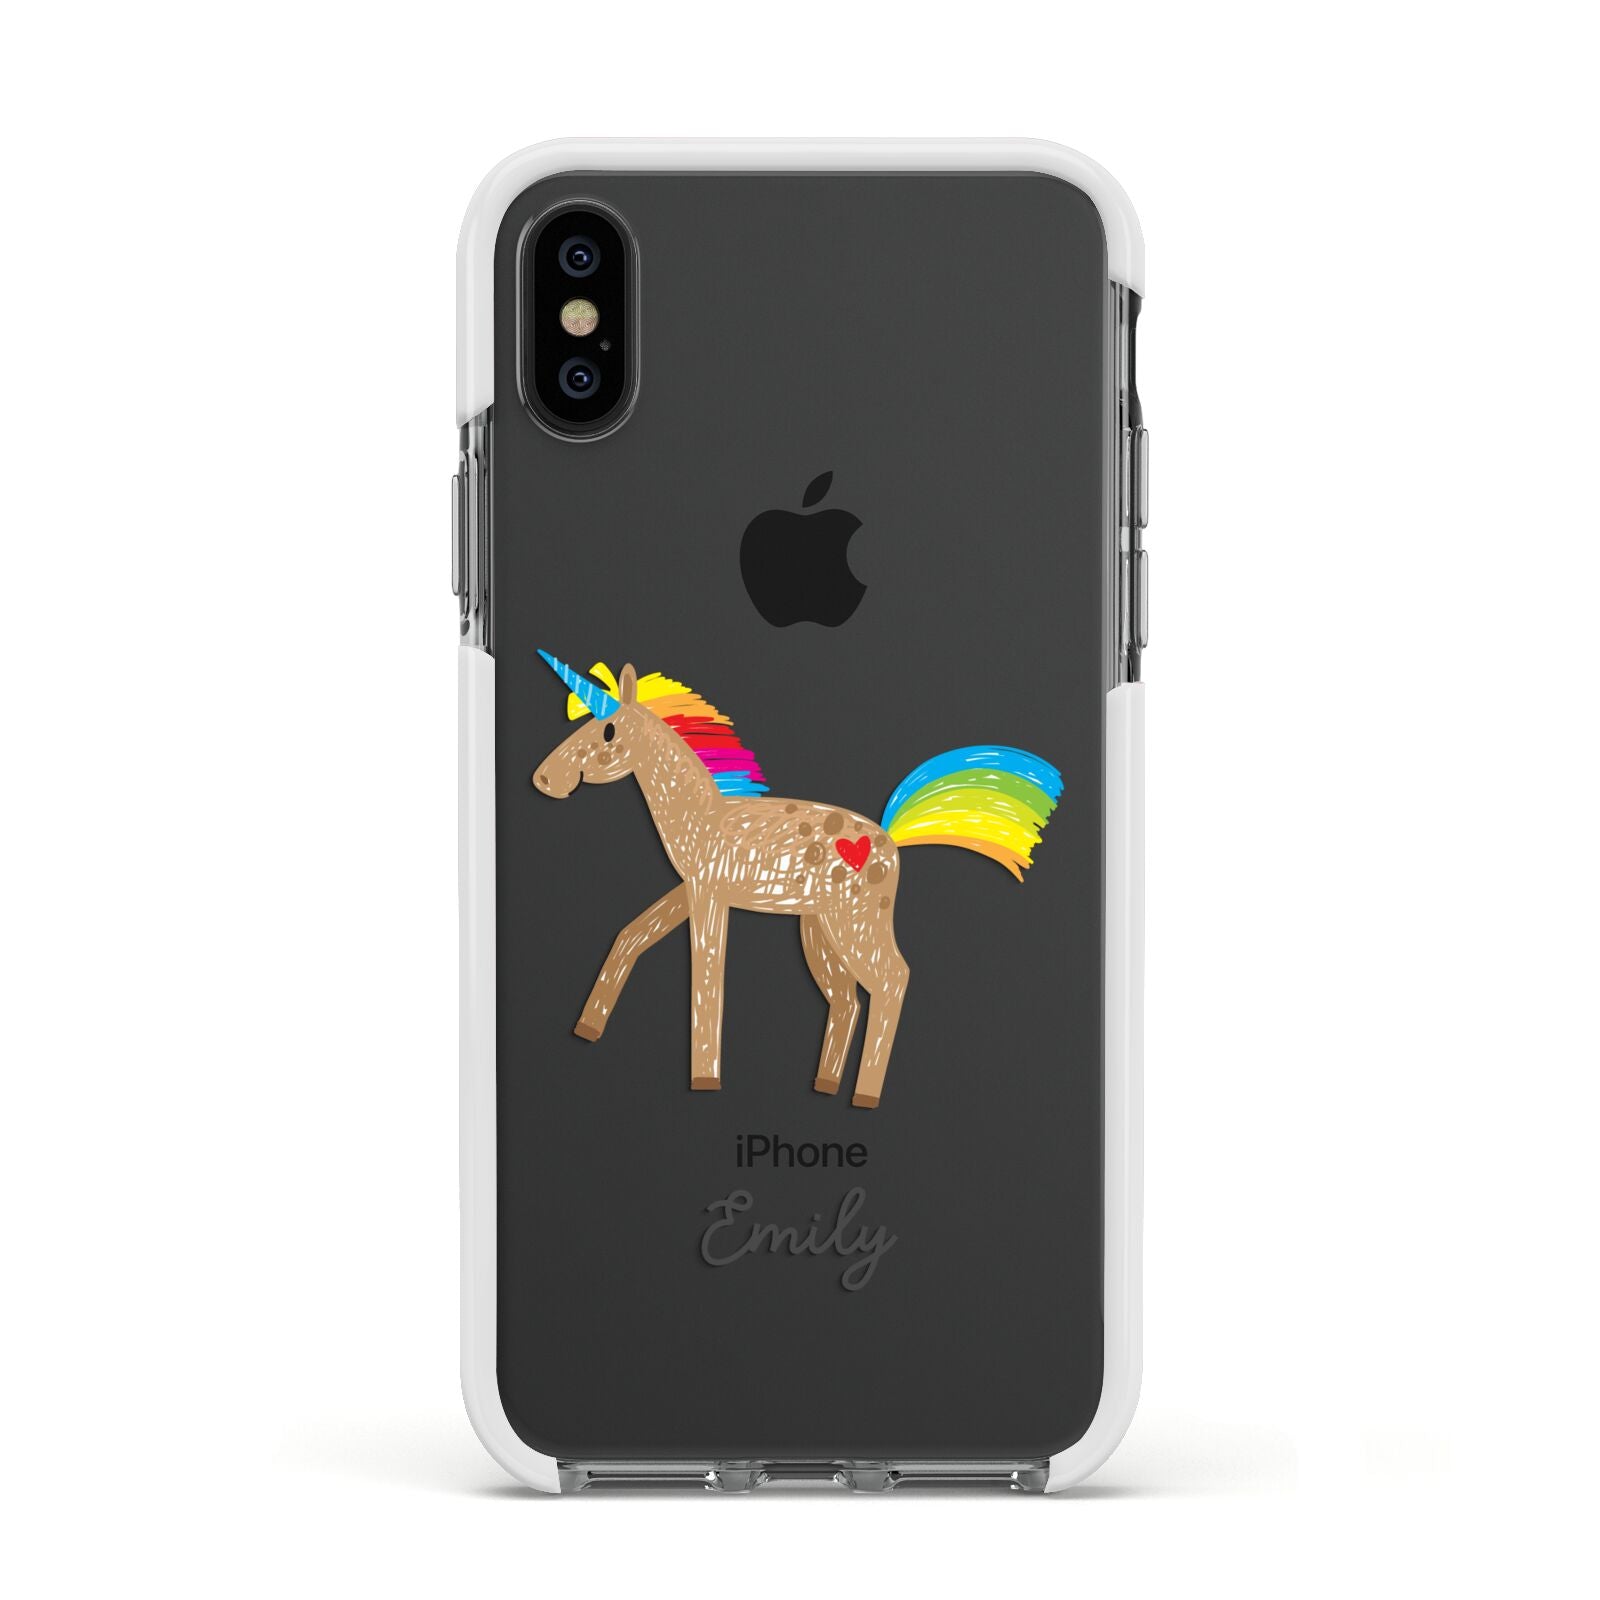 Personalised Unicorn with Name Apple iPhone Xs Impact Case White Edge on Black Phone